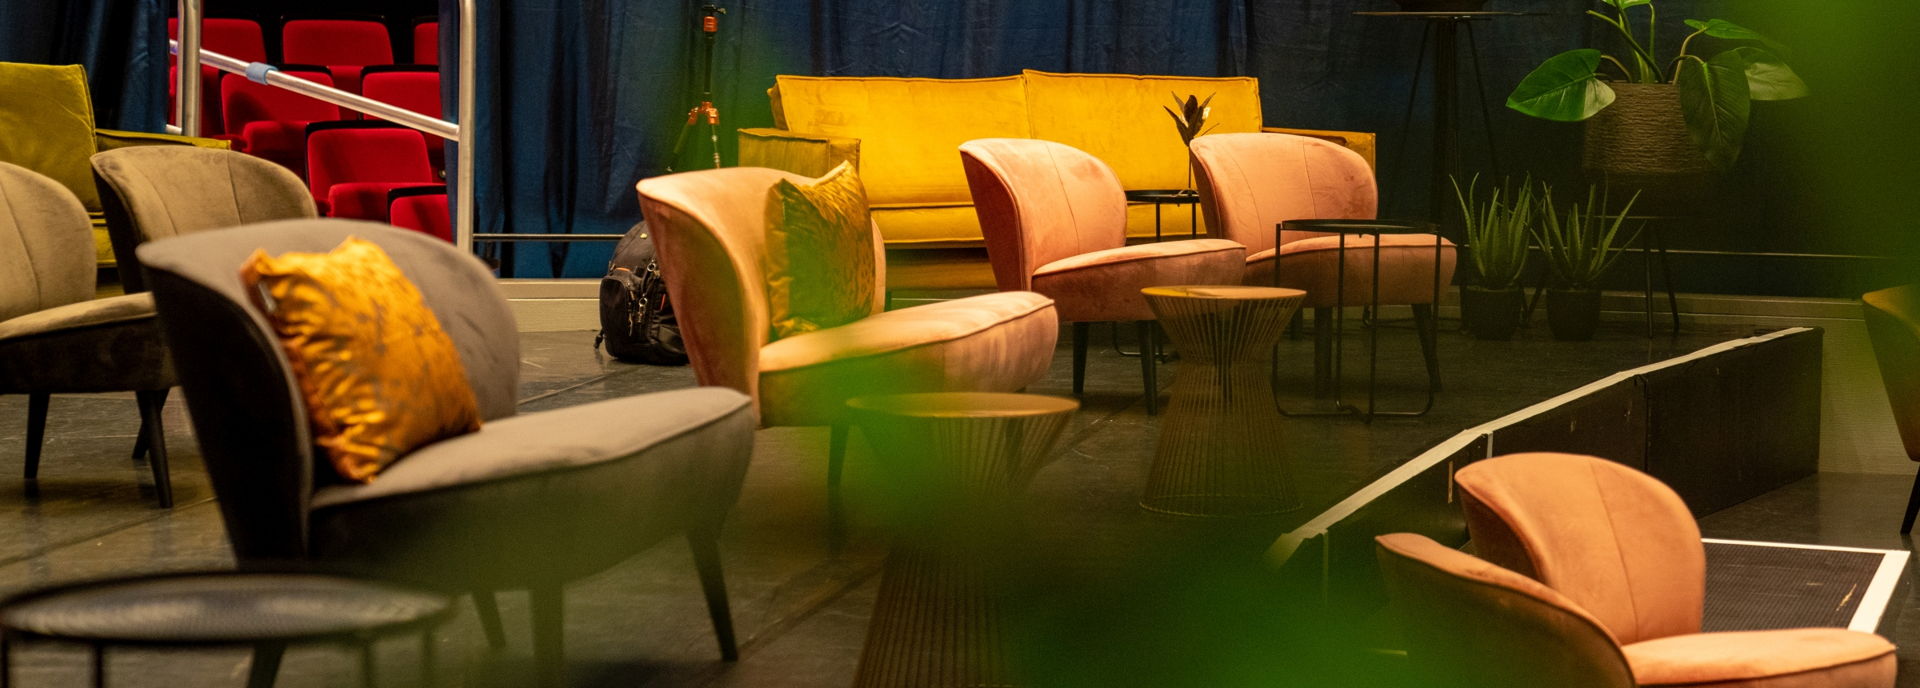 De grote zaal van De Tamboer is in 2020 omgetoverd tot Tamboer-lounge met gezellige bankjes, fauteuils en zitjes. 